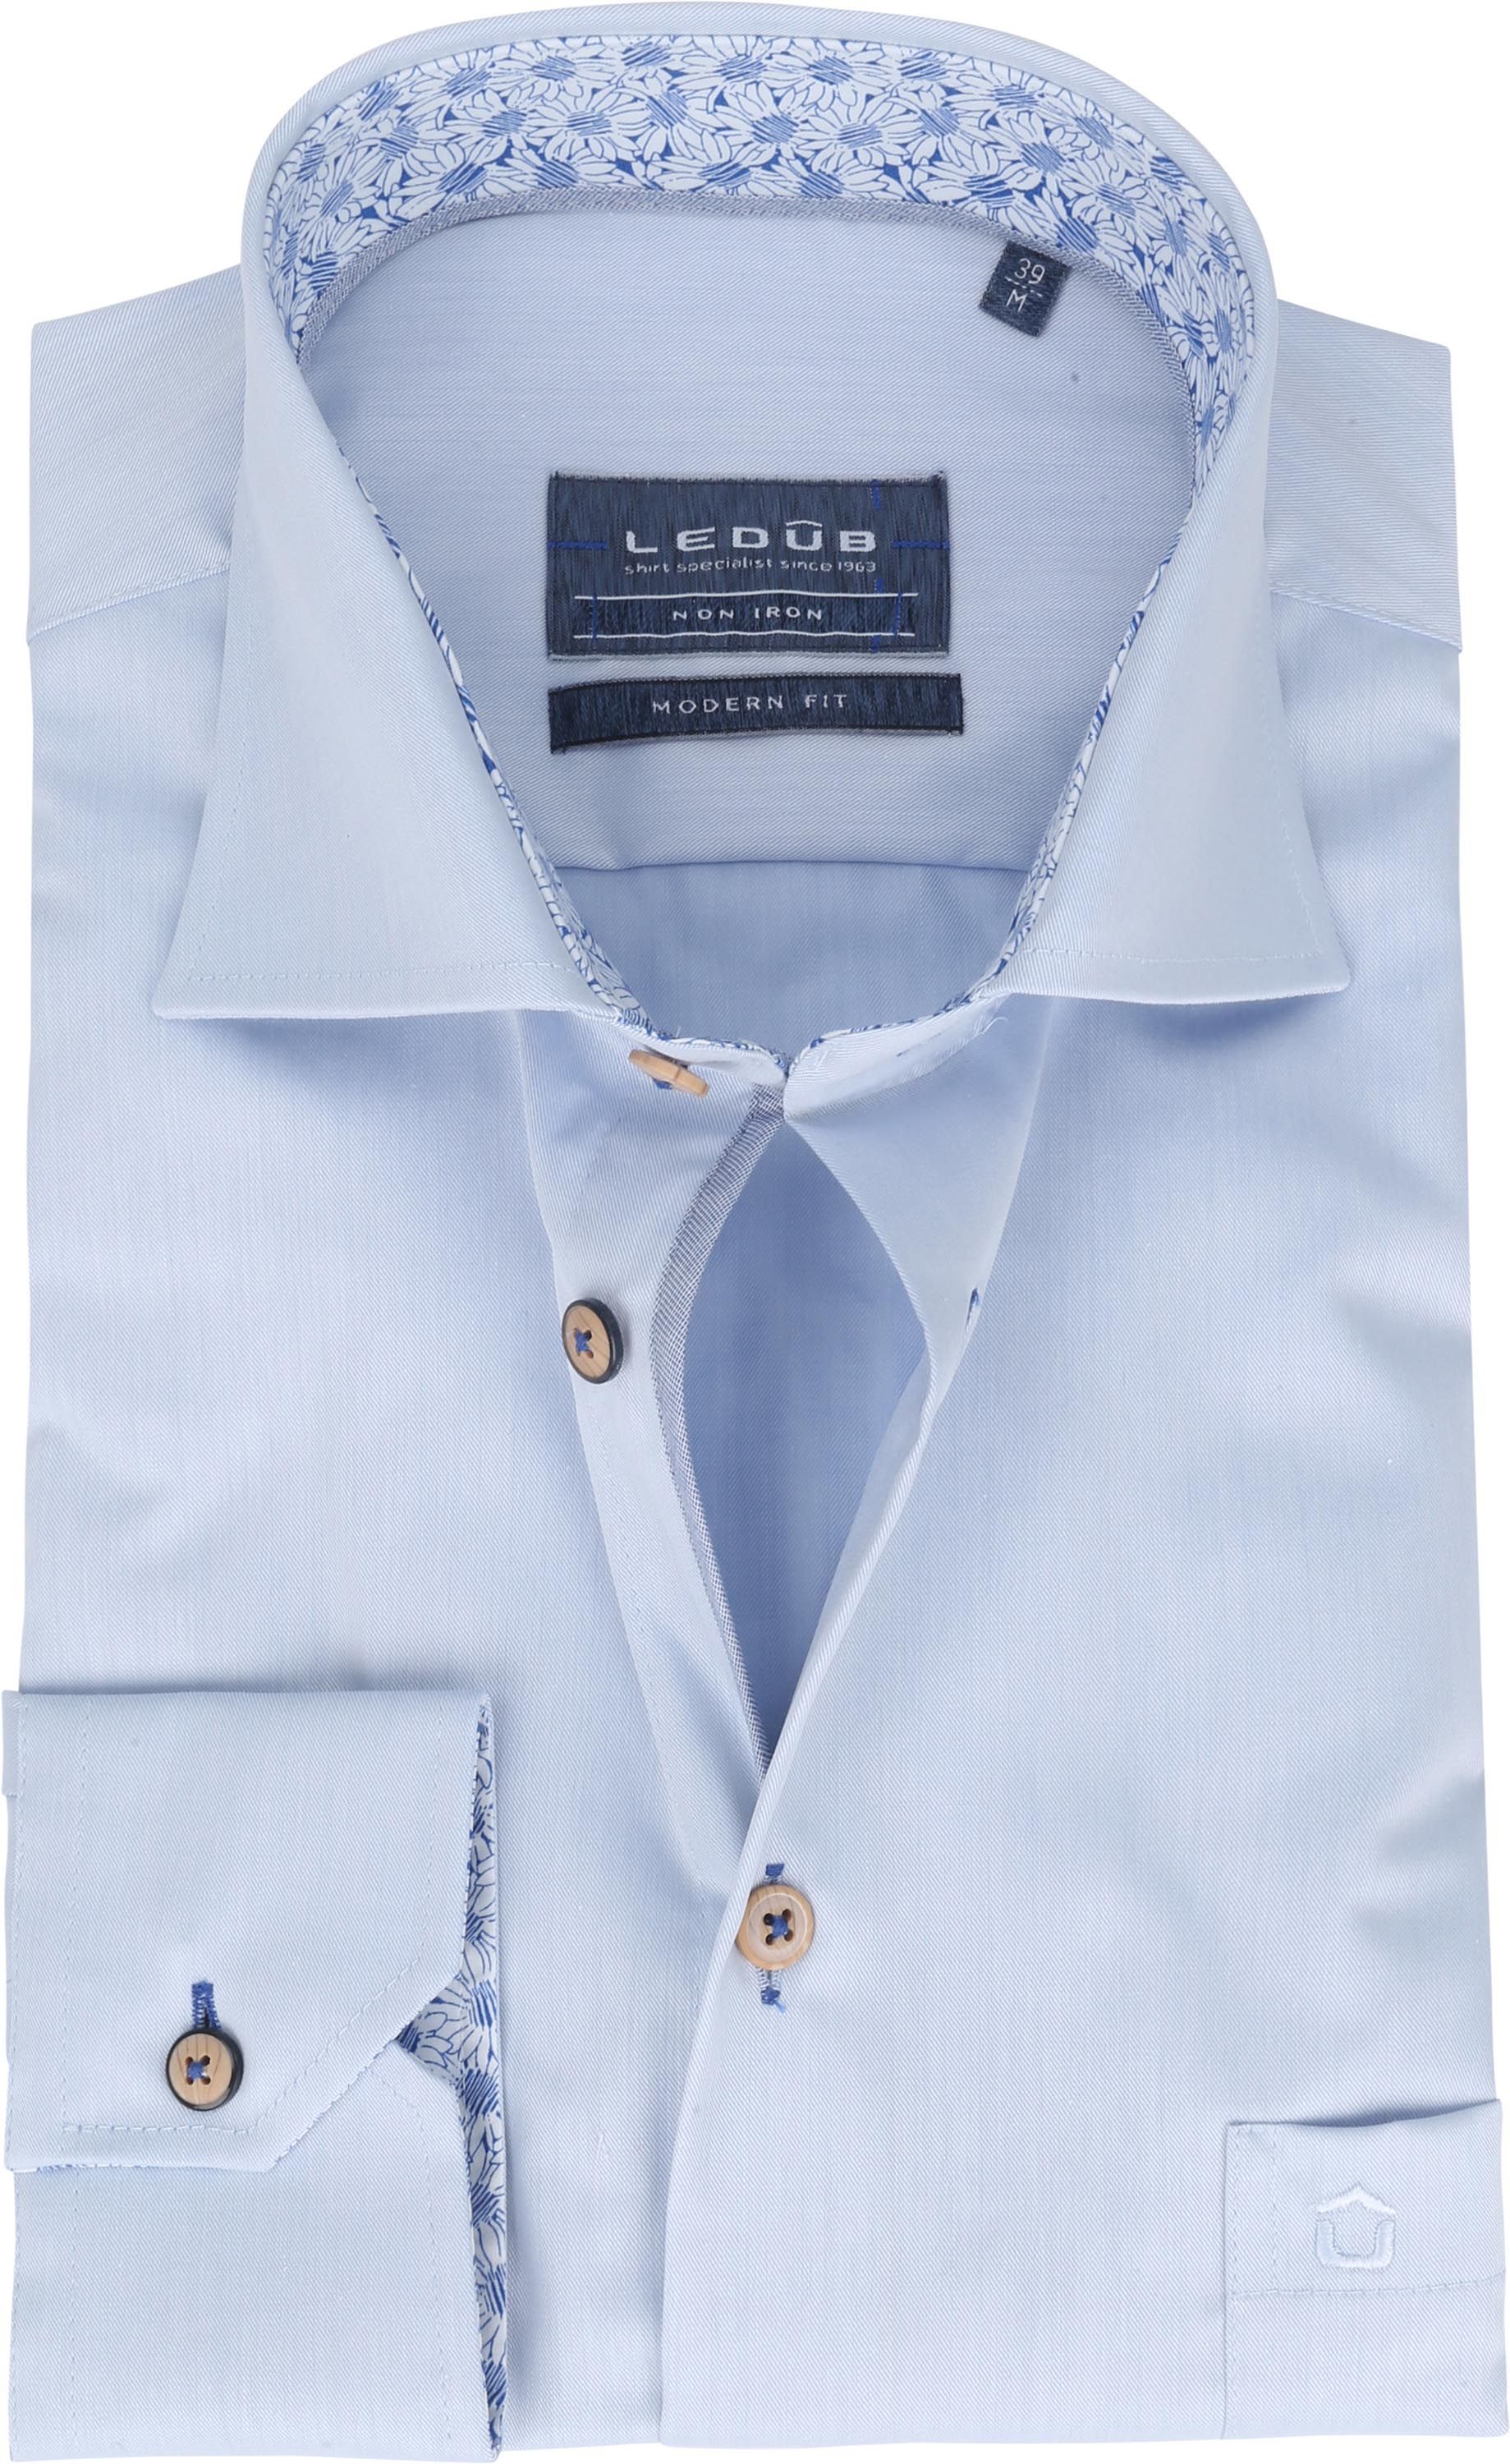 Ledub Shirt MF Non Iron 1773M Light Blue size 15 1/2